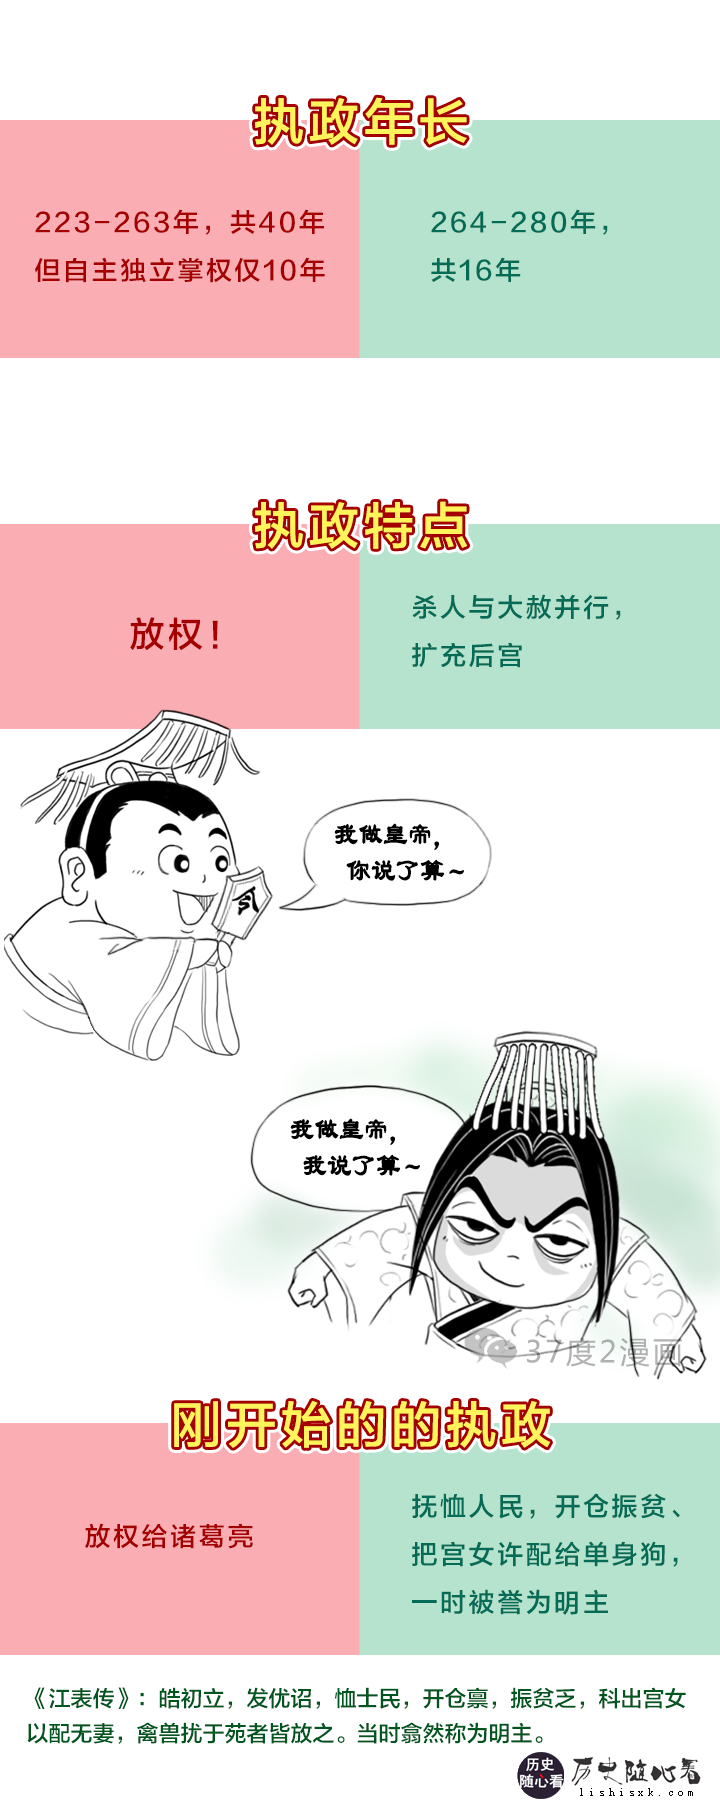 刘禅vs孙皓，蜀国末代皇帝和吴国末代皇帝比较